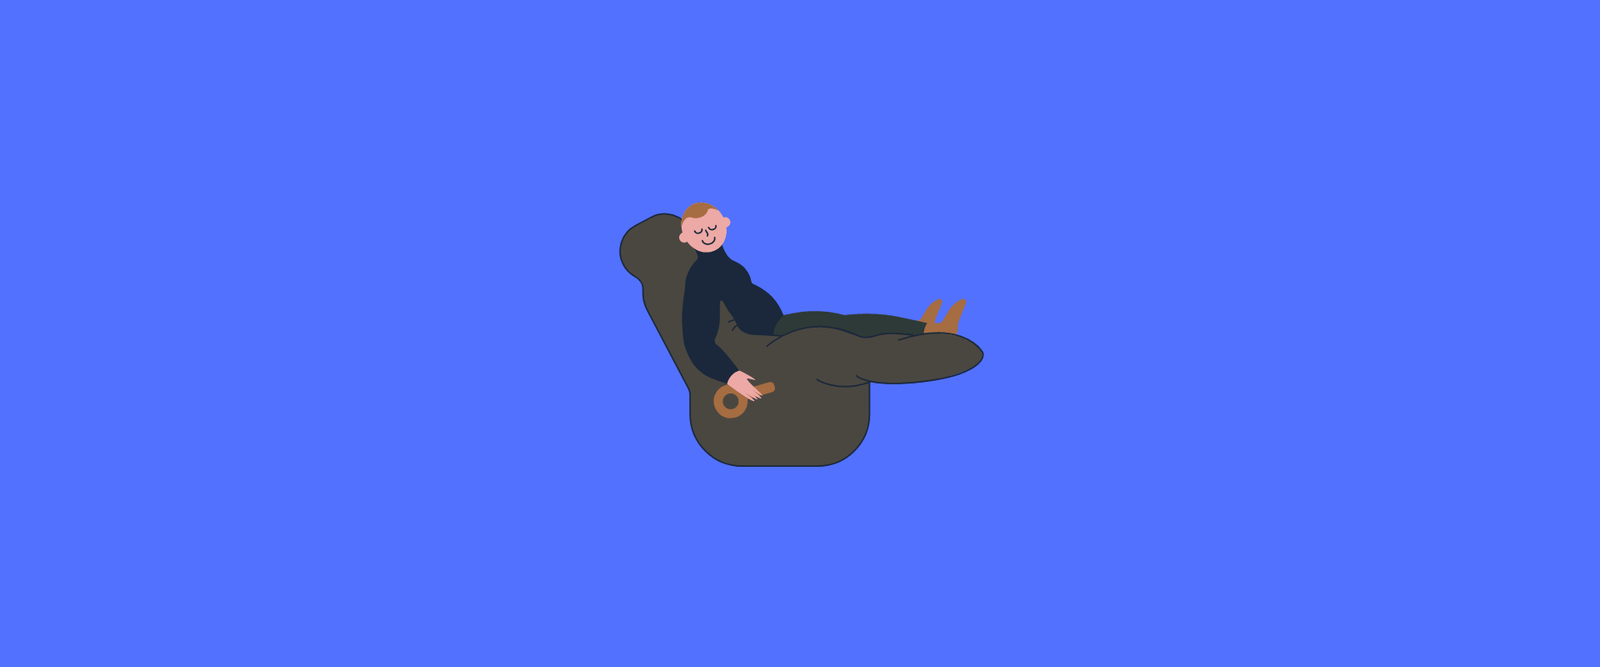 recline chair